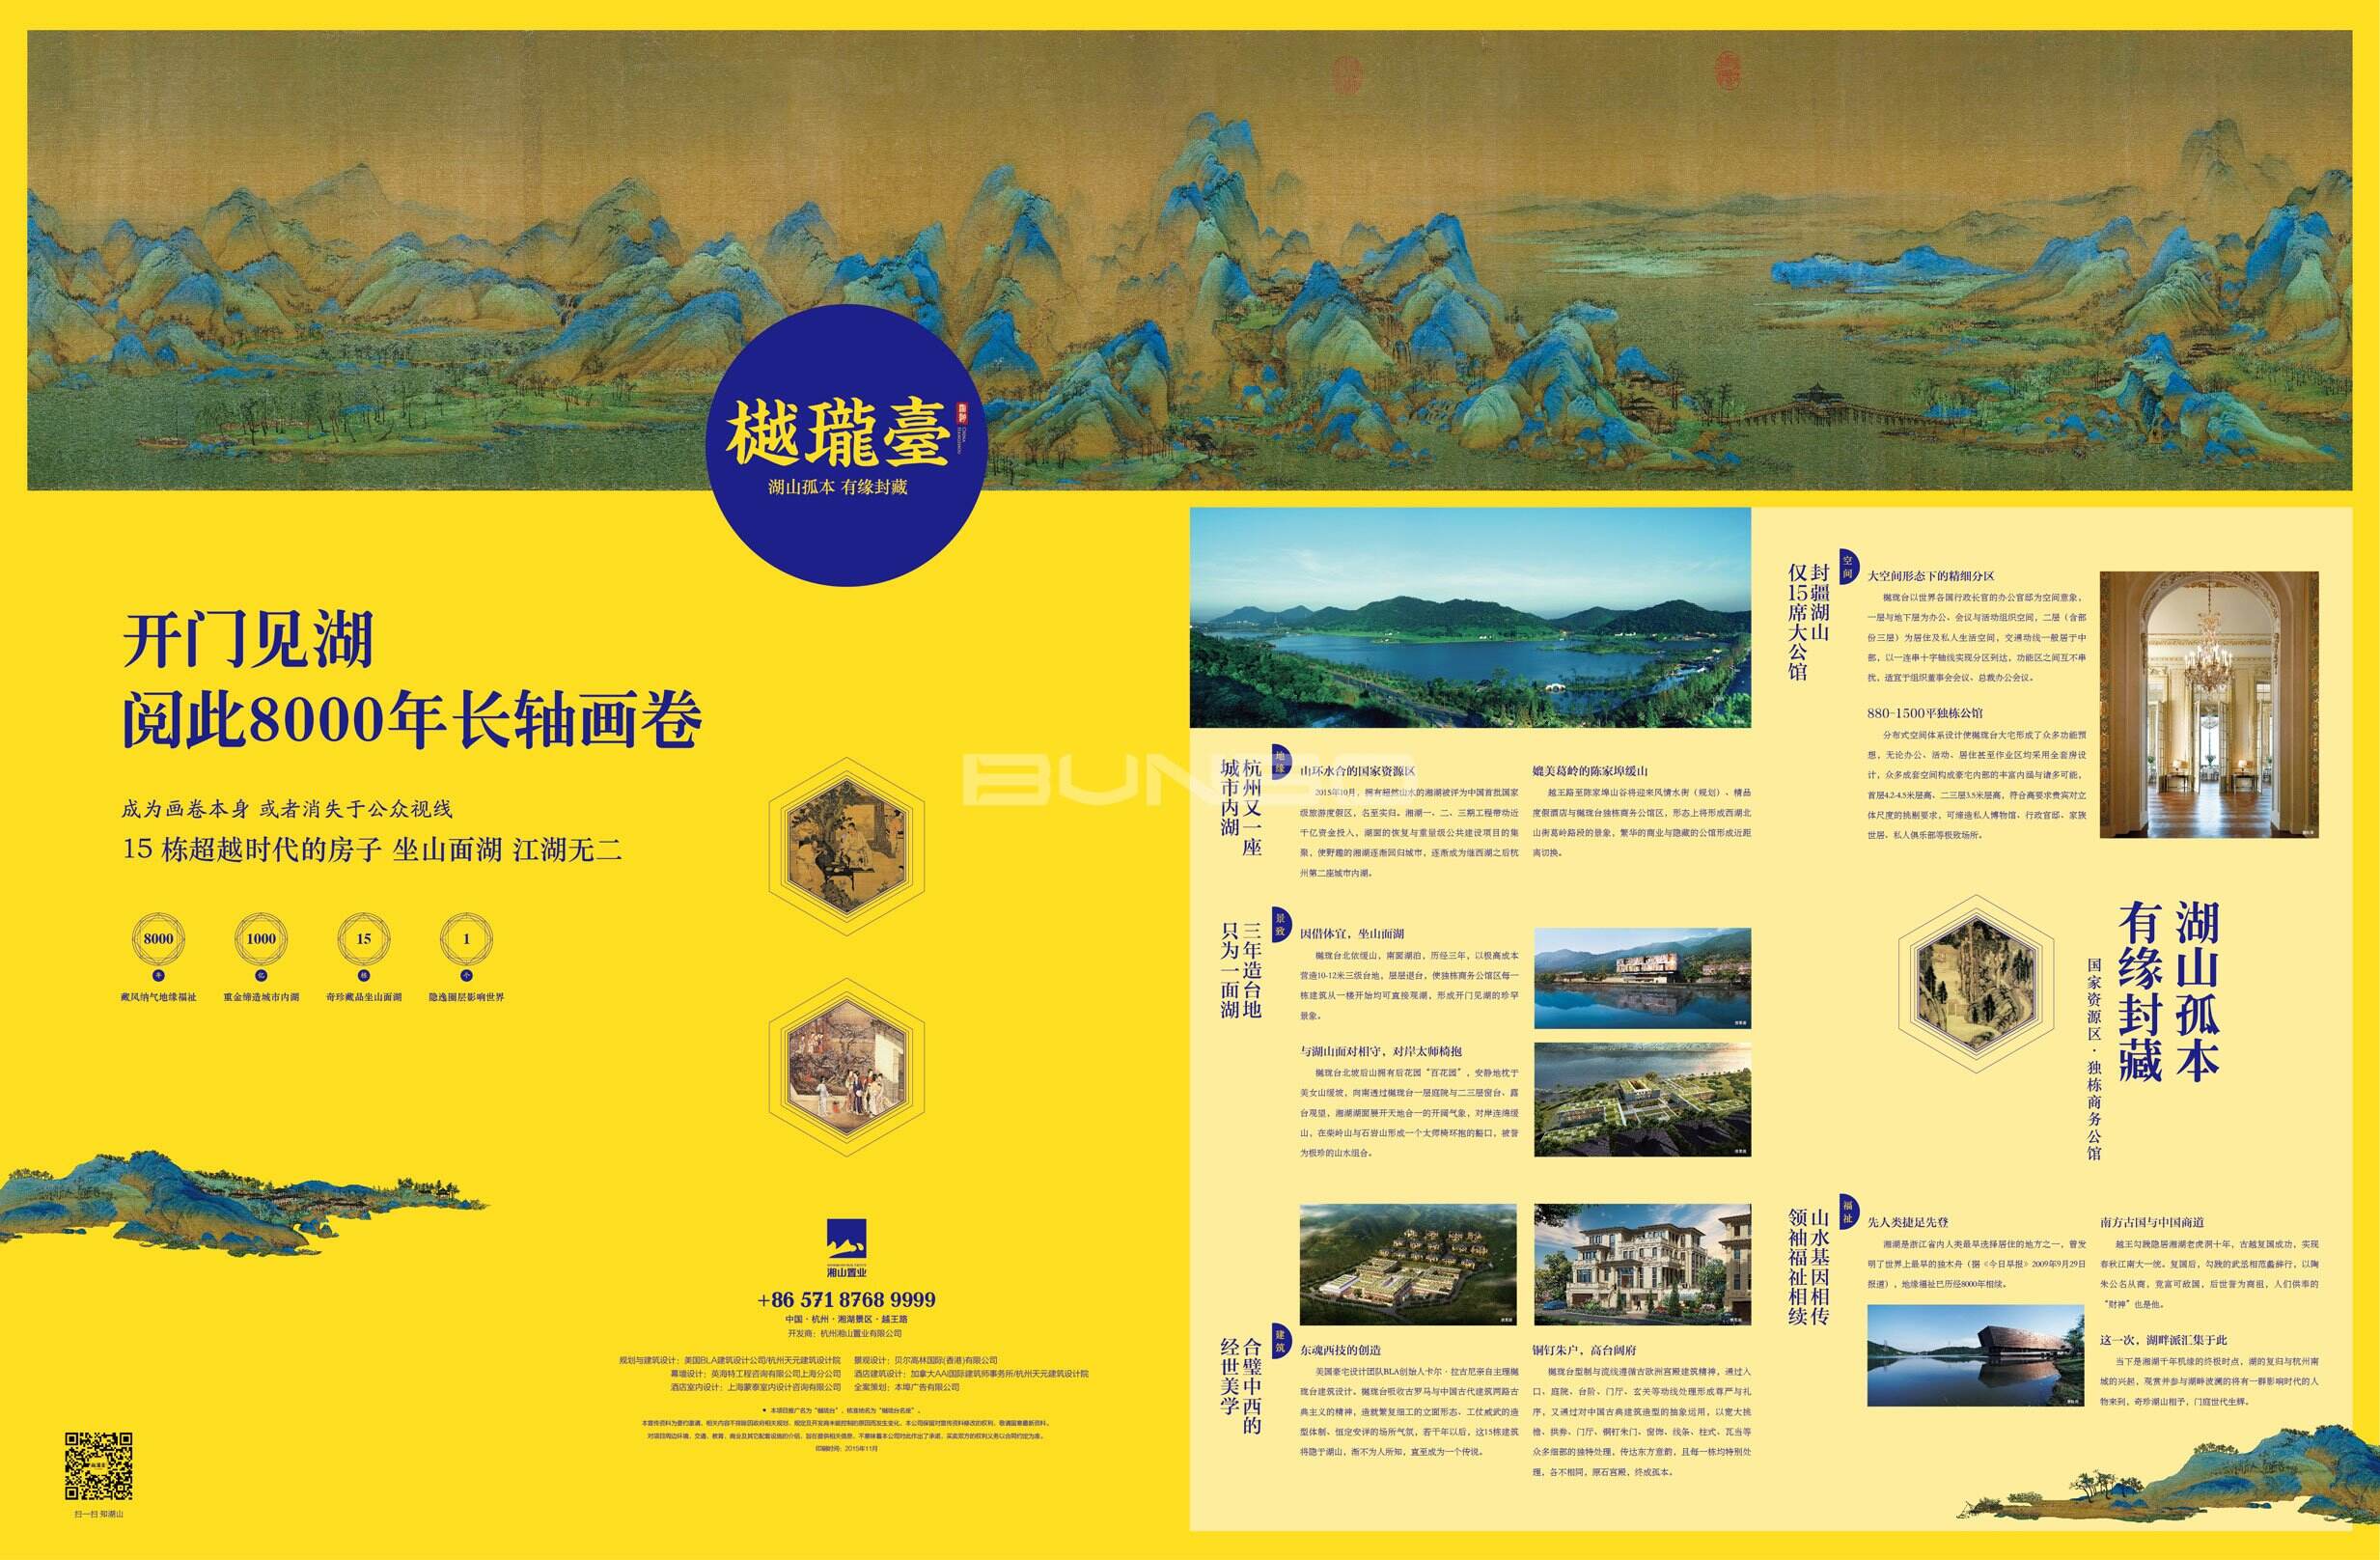 樾珑台出品的《湘湖游览地图》,本埠手绘地图作品